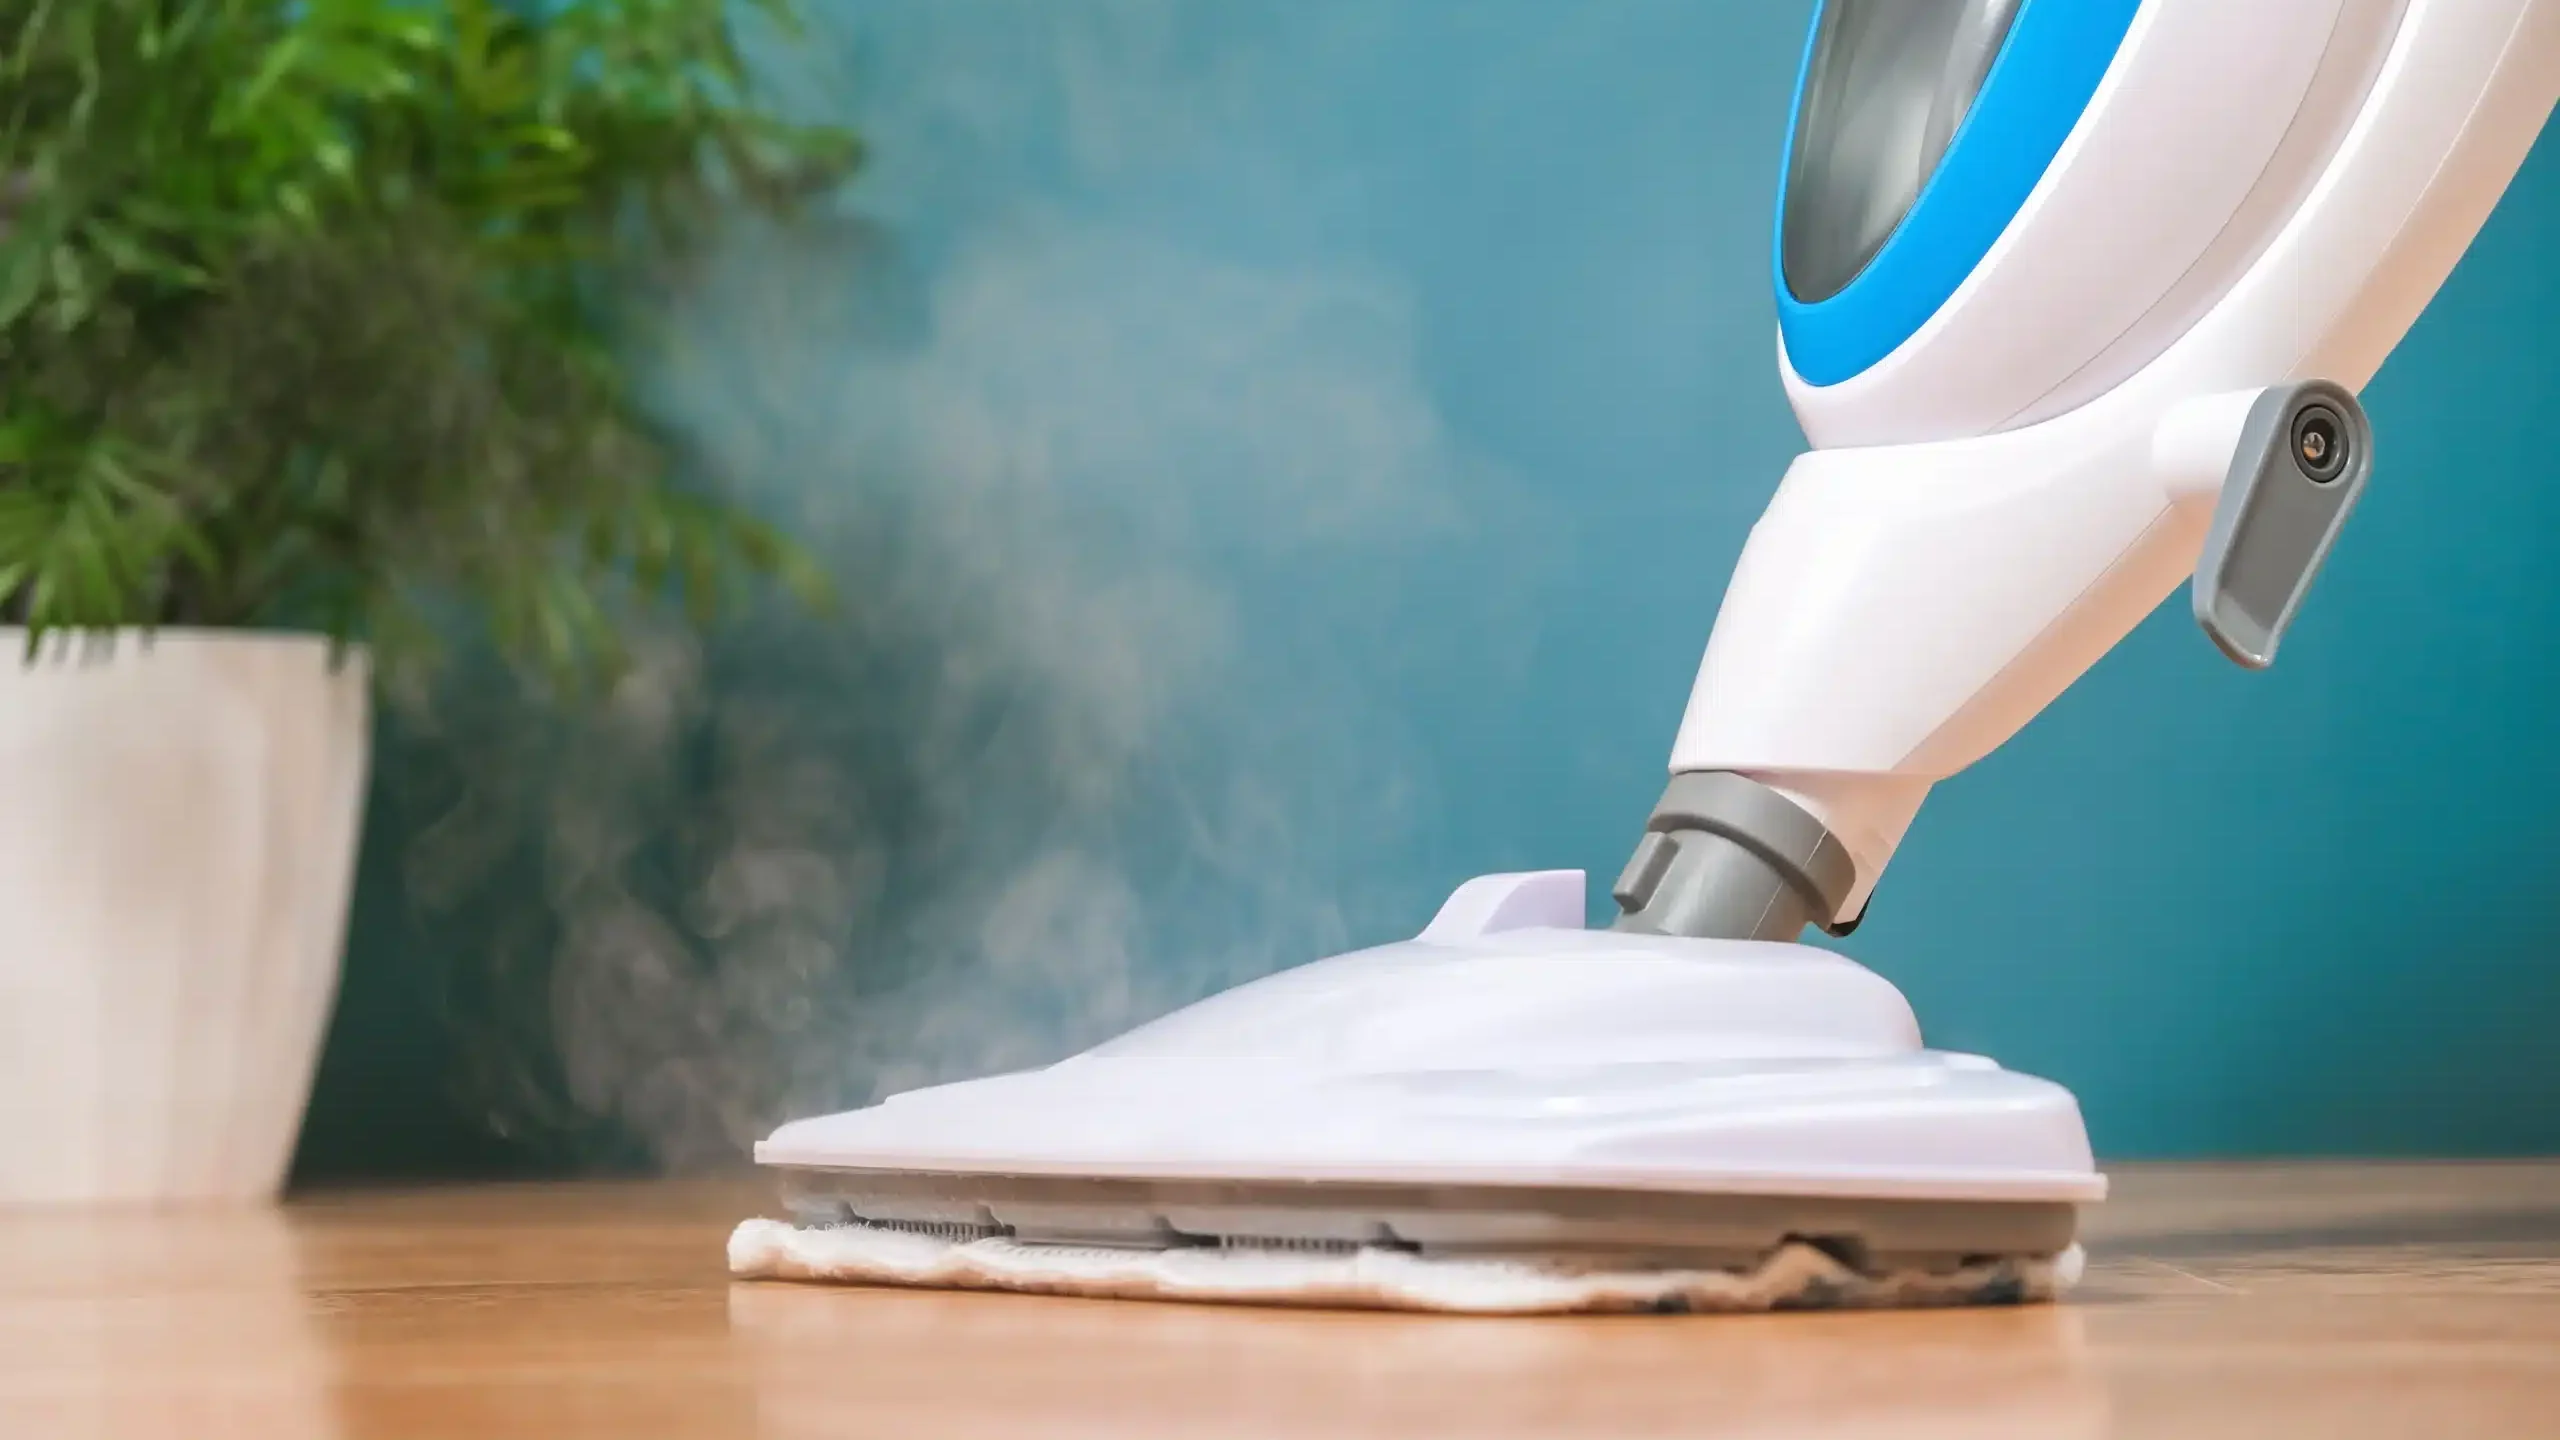 Mop parowy - najlepszy i najbardziej ekologiczny sposób mycie podłogi bez smug